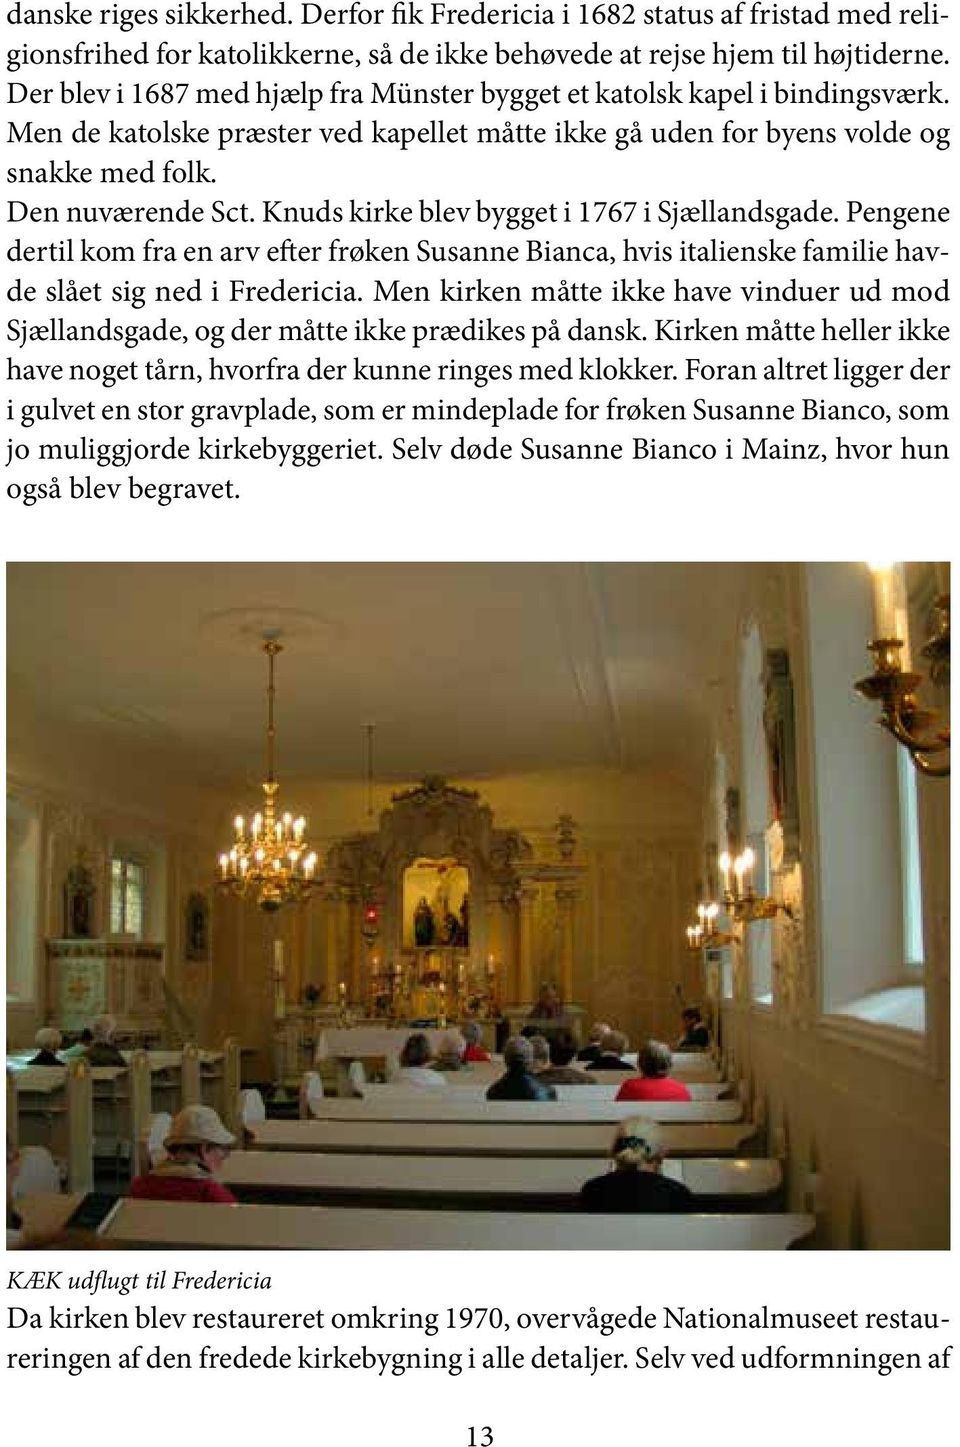 Knuds kirke blev bygget i 1767 i Sjællandsgade. Pengene dertil kom fra en arv efter frøken Susanne Bianca, hvis italienske familie havde slået sig ned i Fredericia.